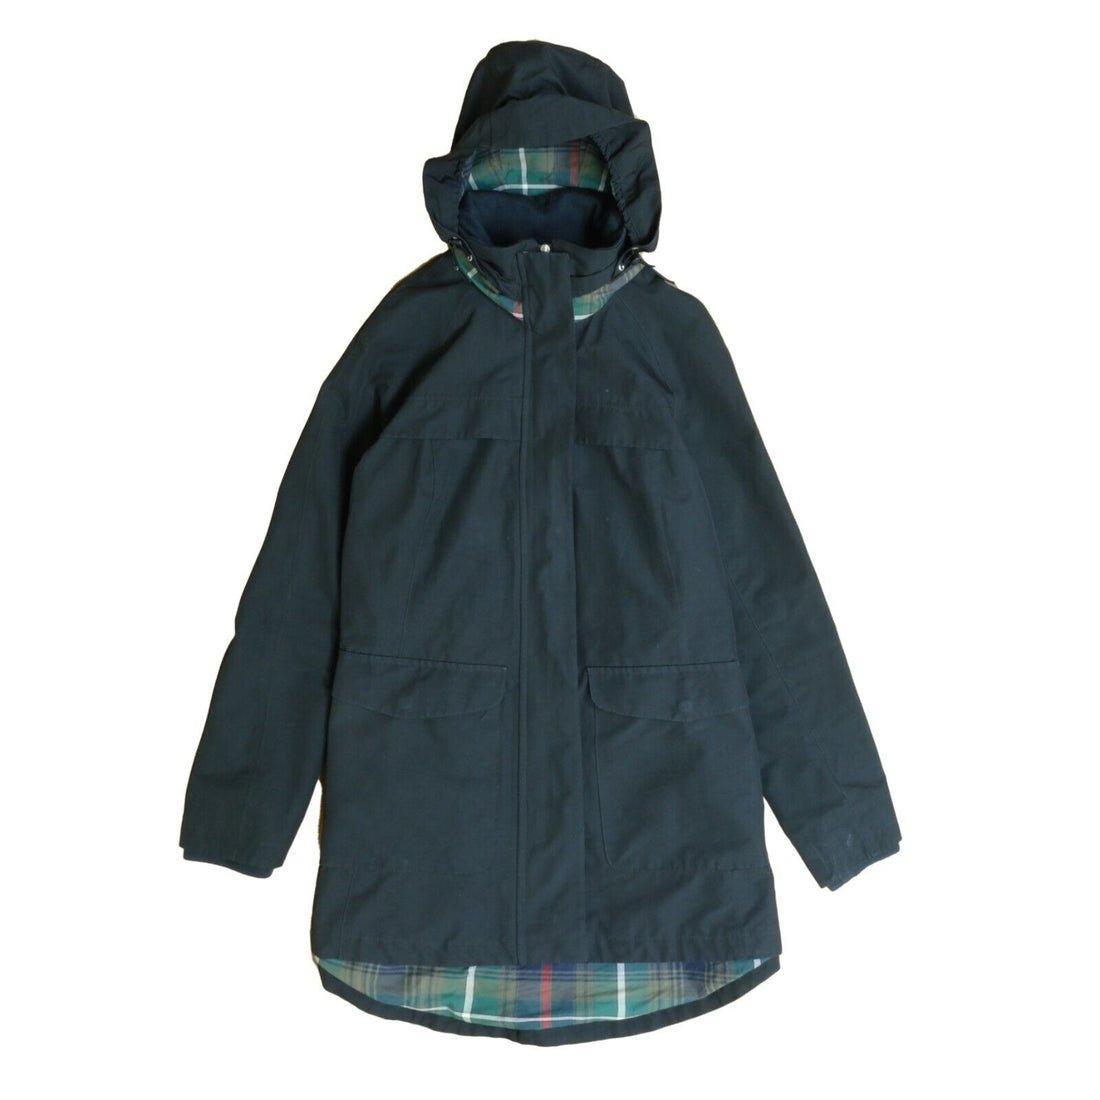 Vintage Pendleton Rain Coat Jacket Size Medium Black Plaid Lined Hooded